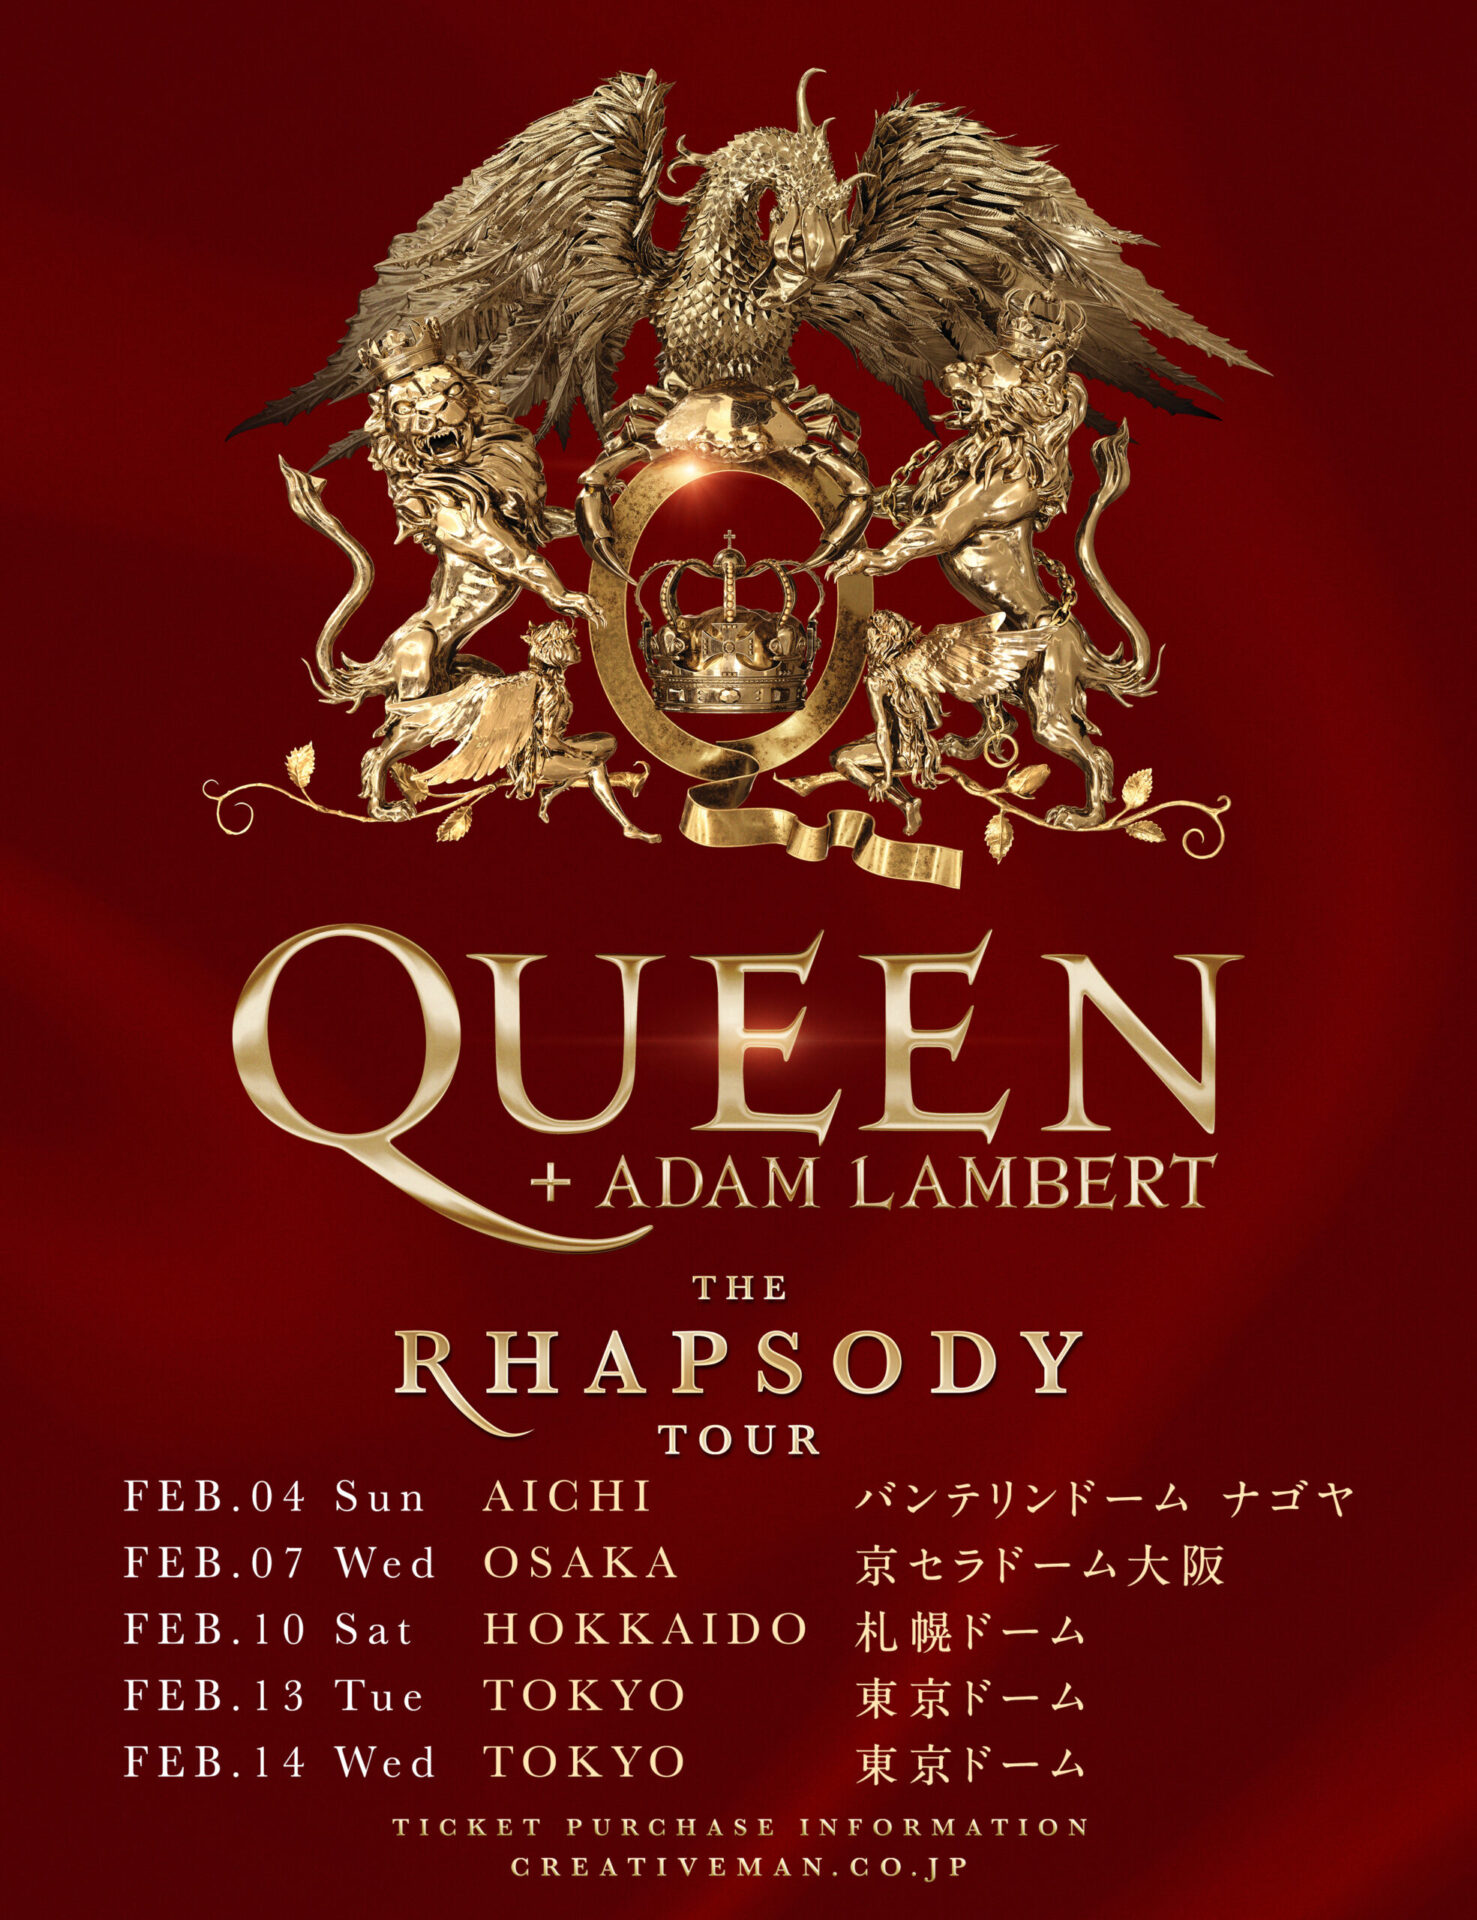 QUEEN + ADAM LAMBERT -THE RHAPSODY TOUR- | ニッポン放送イベント ...